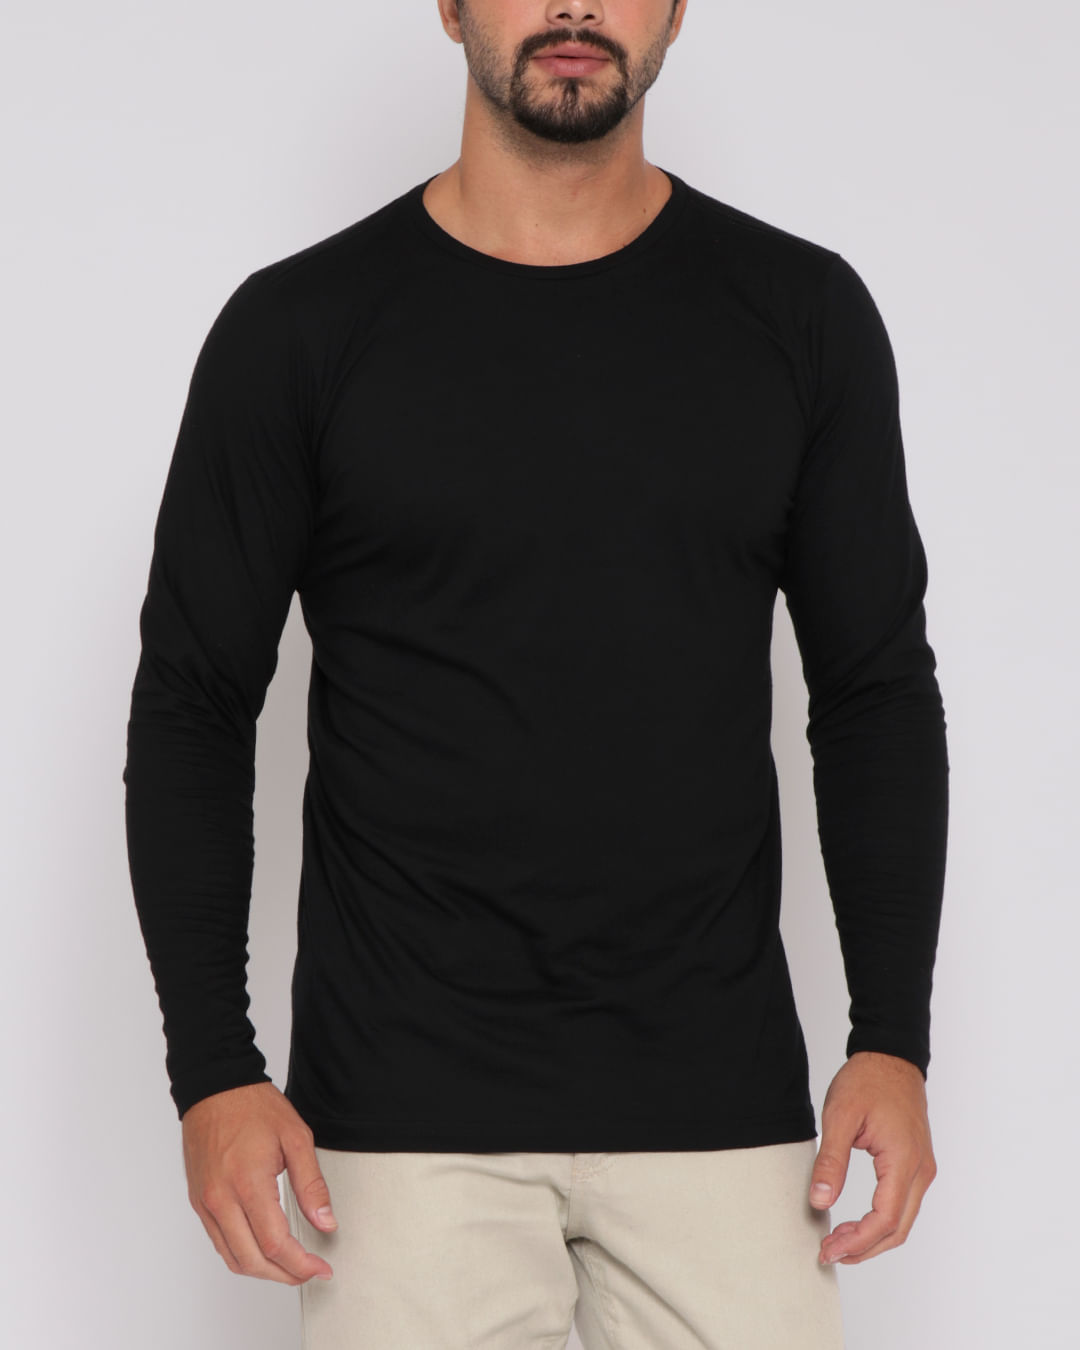 Camiseta preta - Tshirt-black - Outros Moda e Acessórios - Magazine Luiza